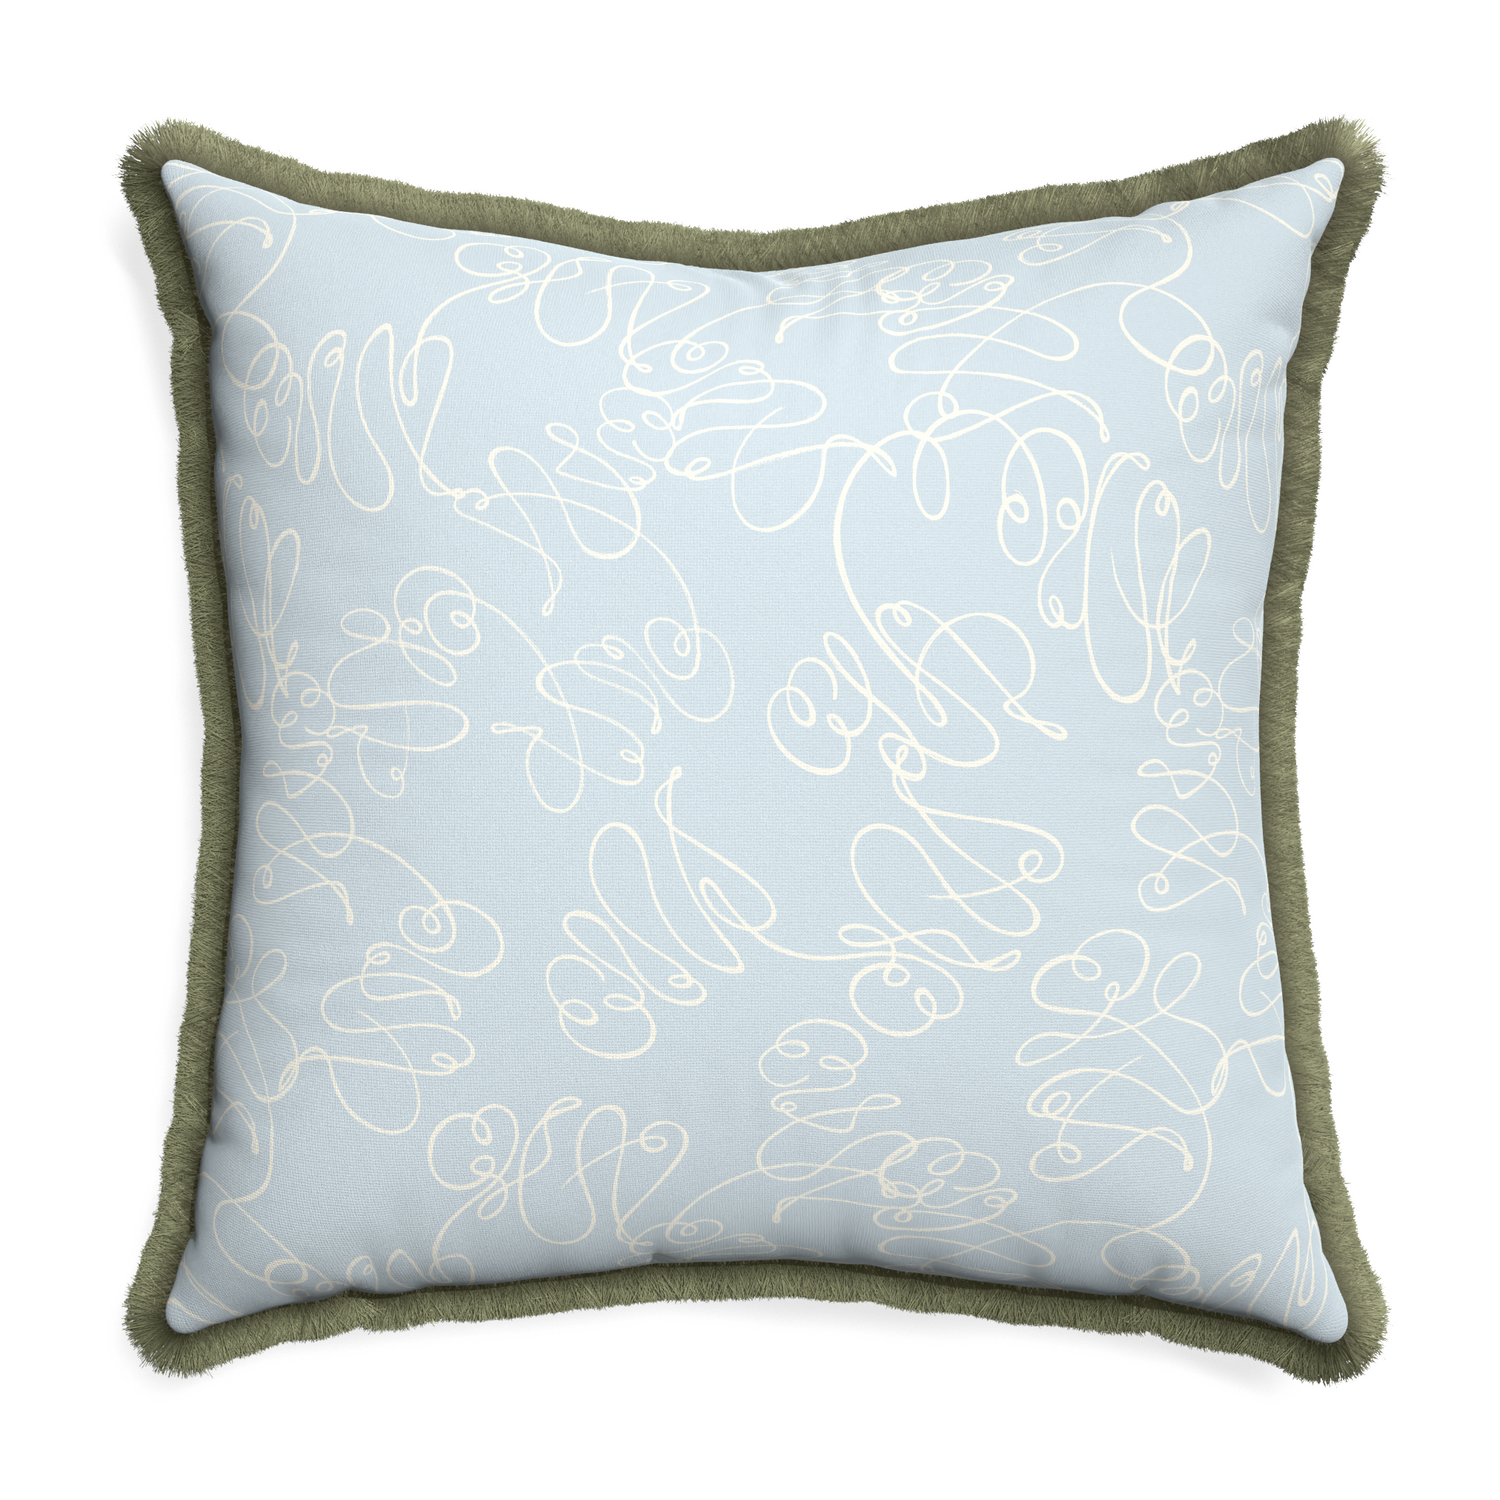 Euro-sham mirabella custom pillow with sage fringe on white background